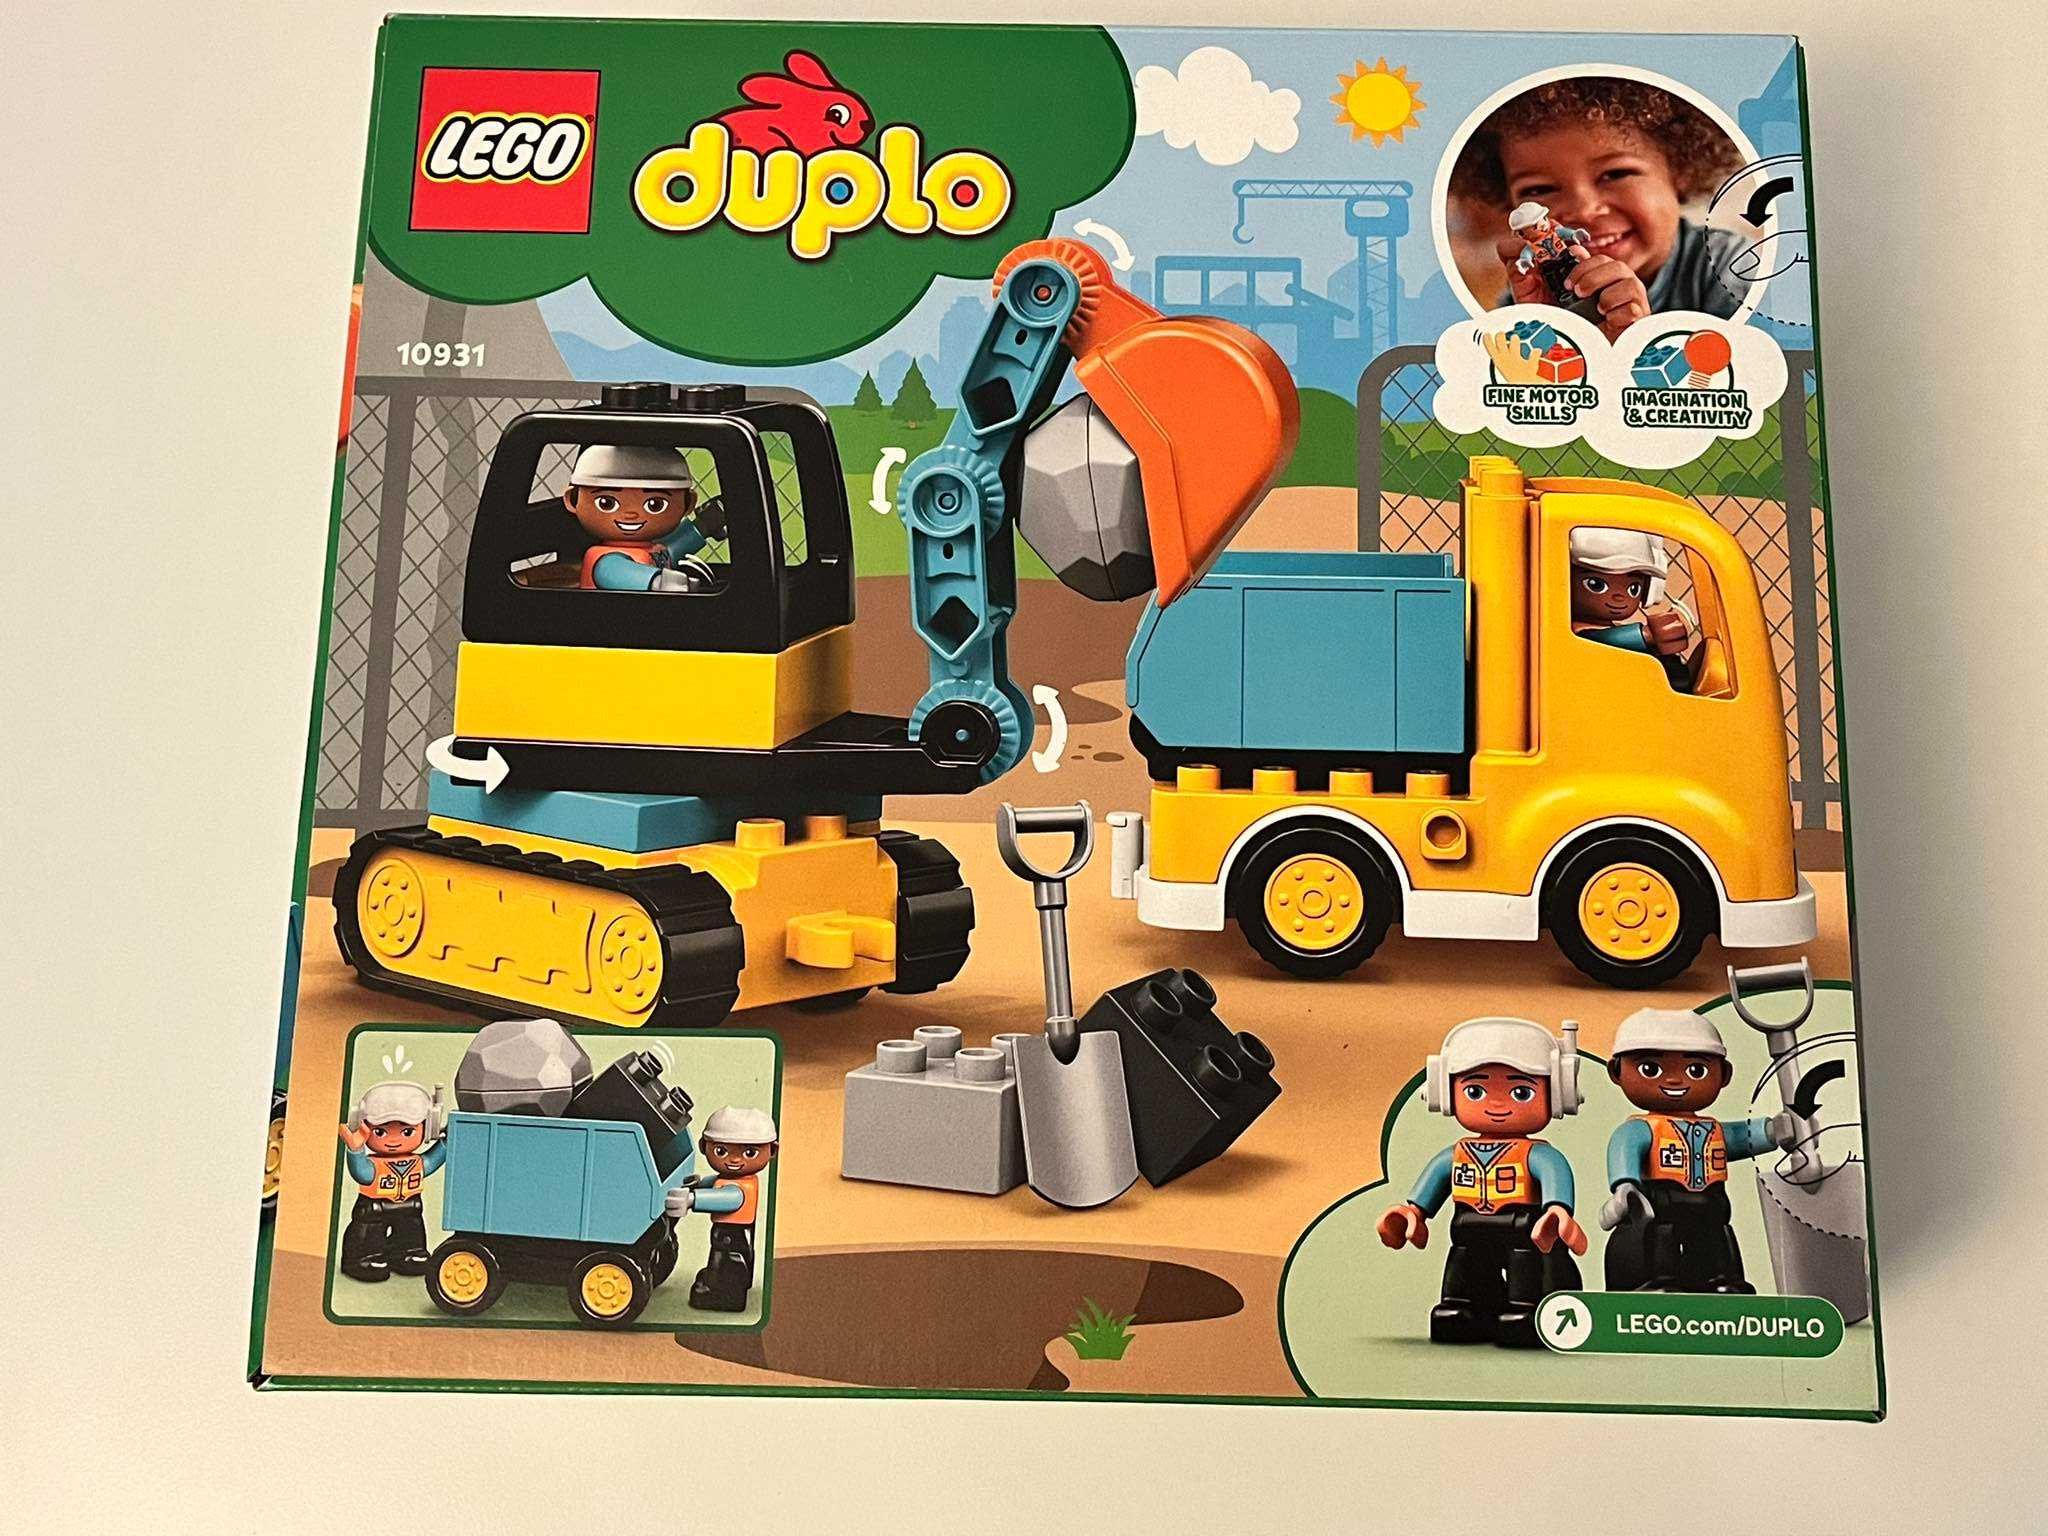 Nowe LEGO Duplo 10931 klocki budowa ciężarówka i koparka